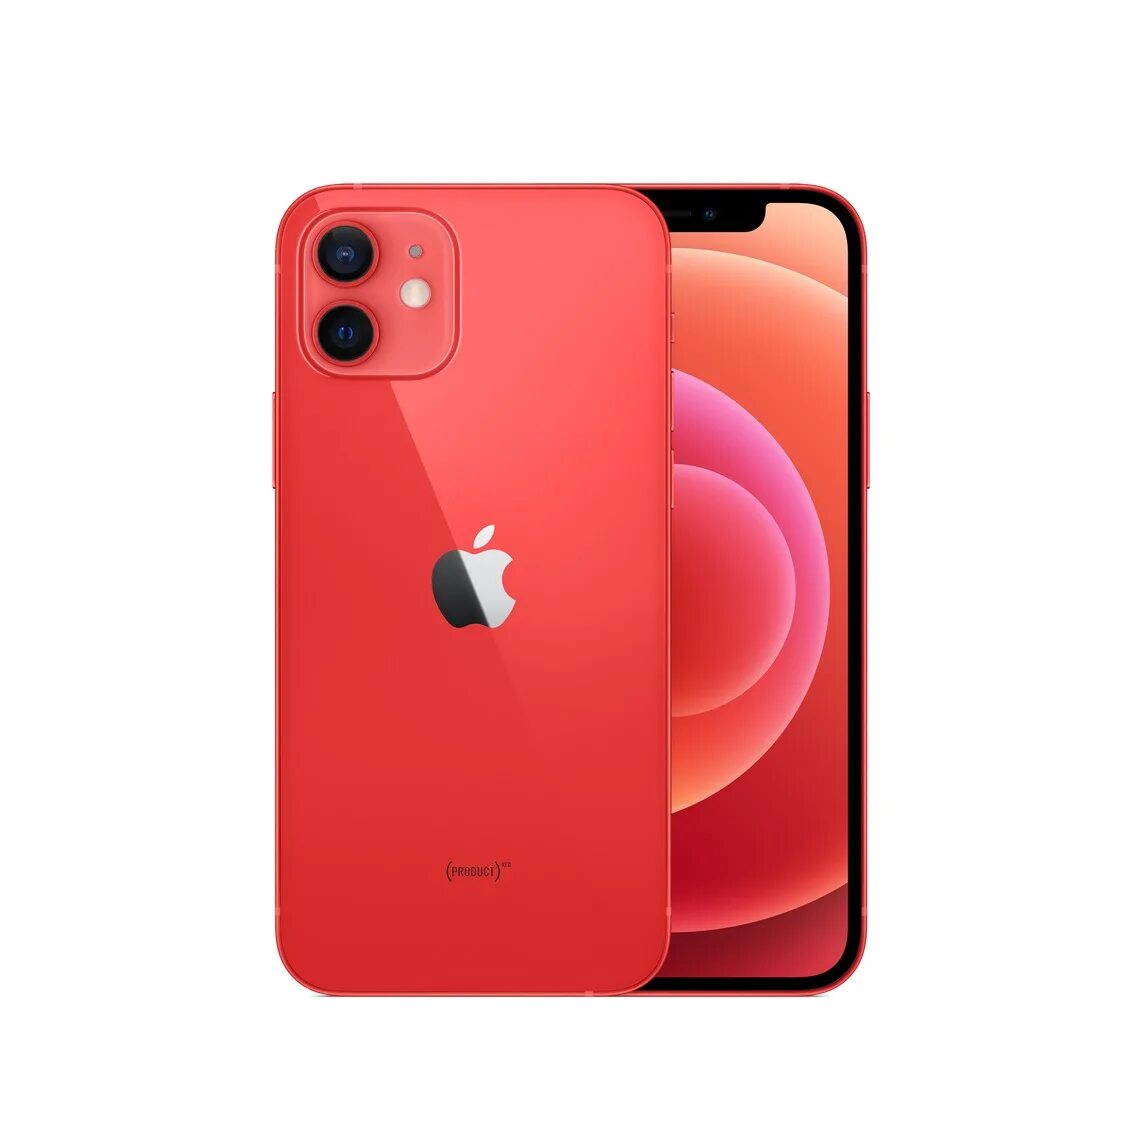 Iphone 12 128gb Red. Iphone 12 Mini 128gb Red. Iphone 12 Mini 64gb Red. Apple iphone 11 128gb (product)Red. Apple iphone mini 128gb